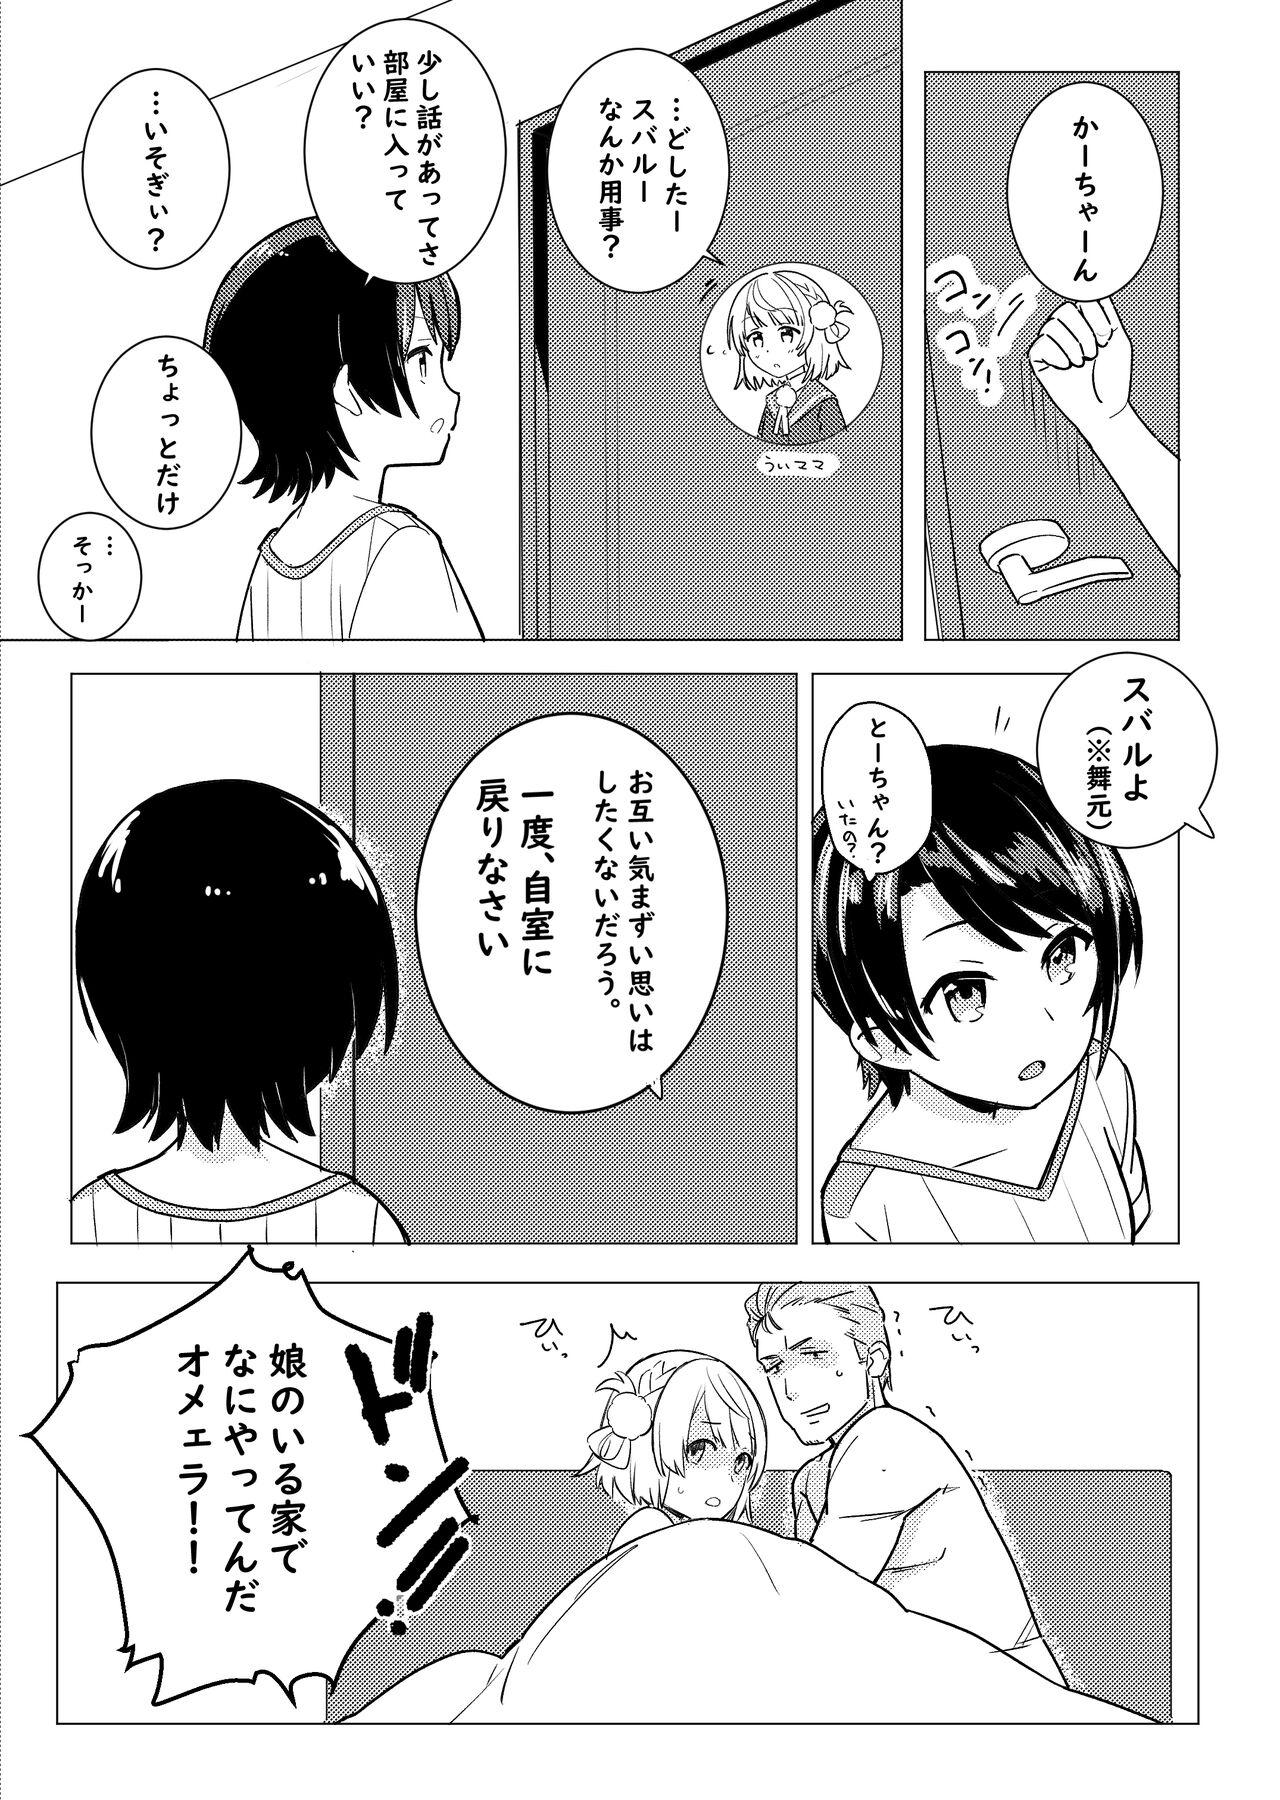 Twitter Short Manga 5